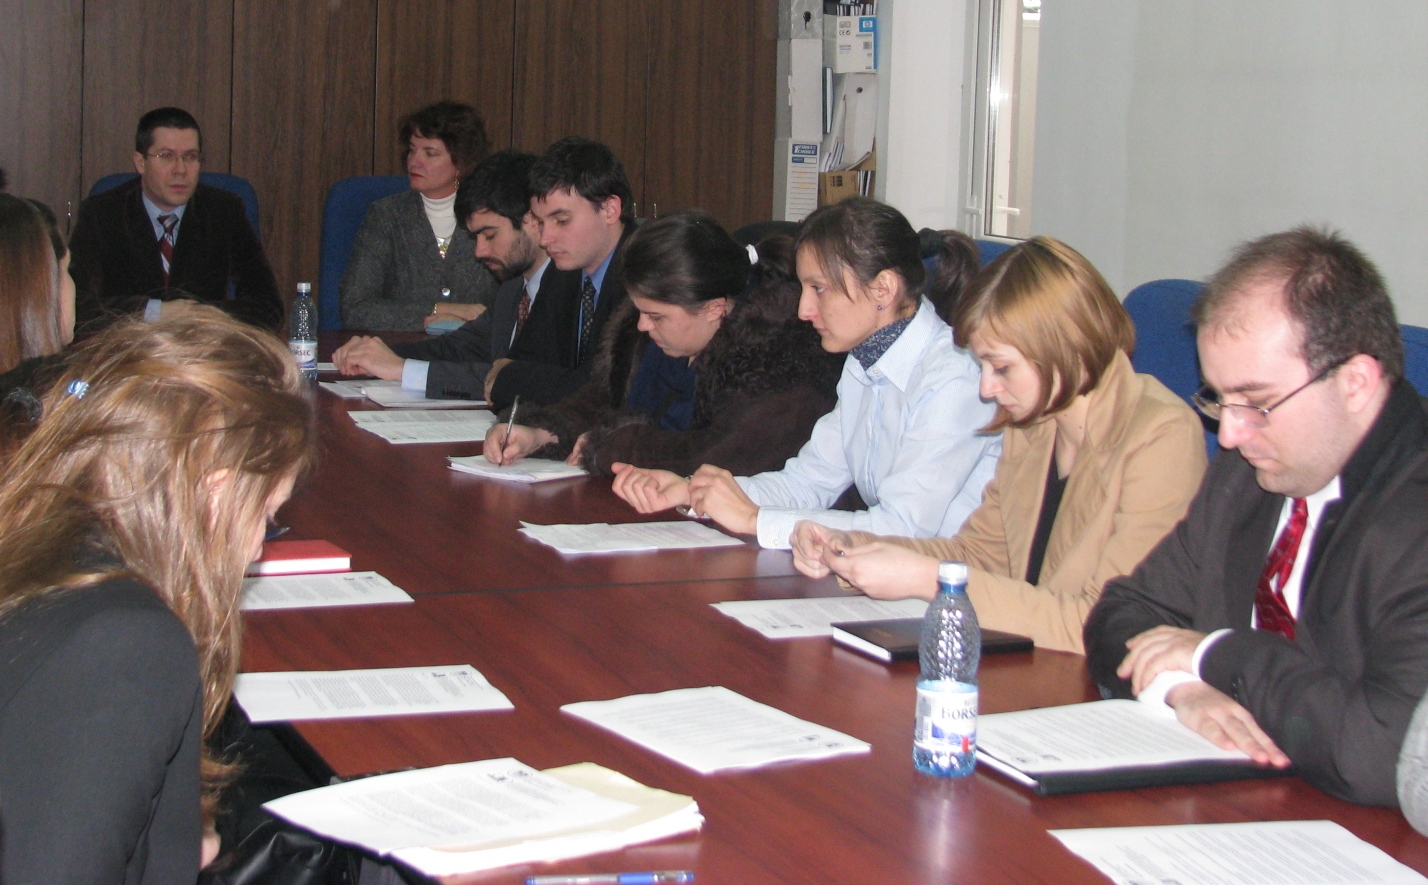  Masteranzi de la Catedra de Administraţie Publică a Universităţii “Babeş-Bolyai” și de la School of Urban Affairs & Public Policy a Universității din Delaware, SUA, au lucrat timp de două săptămâni la cercetări comune comparative. Acest program de cercetare şi schimb de experienţă se află deja la a doua ediţie, un grup similar de studenţi vizitând România în ianuarie 2008.  Fiecare echipă a avut o temă de cercetare stabilită în prealabil, care a fost îndelinită prin realizarea unor interviuri cu persoane din instituţii relevante – administraţia publică locală şi judeţeană, structuri deconcentrate, ONG-uri, etc. „Cercetările efectuate de grupurile mixte de studenți au început cu teme referitoare la politici educaționale, de exemplu descentralizarea în educație, descentralizarea în sănătate și managementul în domeniul sănătății publice, transparența și accesul la informațiile publice, și alte teme de interes atât pentru România cât și pentru Statele Unite ale Americii.”, a declarat Dacian Dragoș, prodecanul Facultății de Științe Politice, Administrative și ale Comunicării.  La sfârşitul stagiului, echipele vor prezenta cercetările, ce mai apoi vor fi incluse într-o carte.  Mara Rusu 